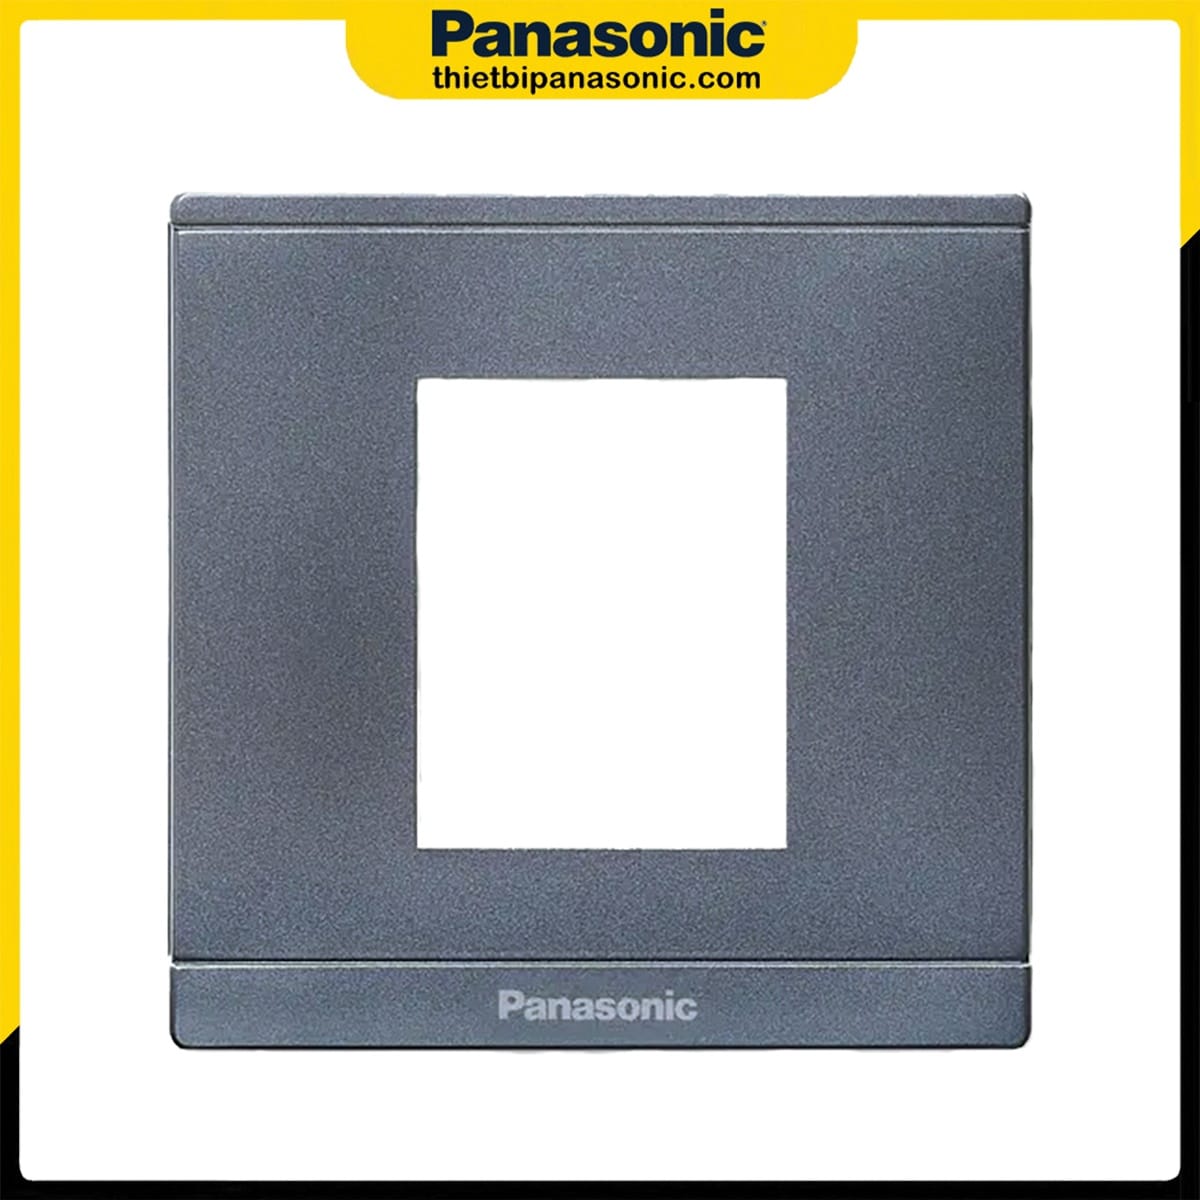 Mặt 2 thiết bị Panasonic Moderva màu xám ánh kim WMFV7812MYH